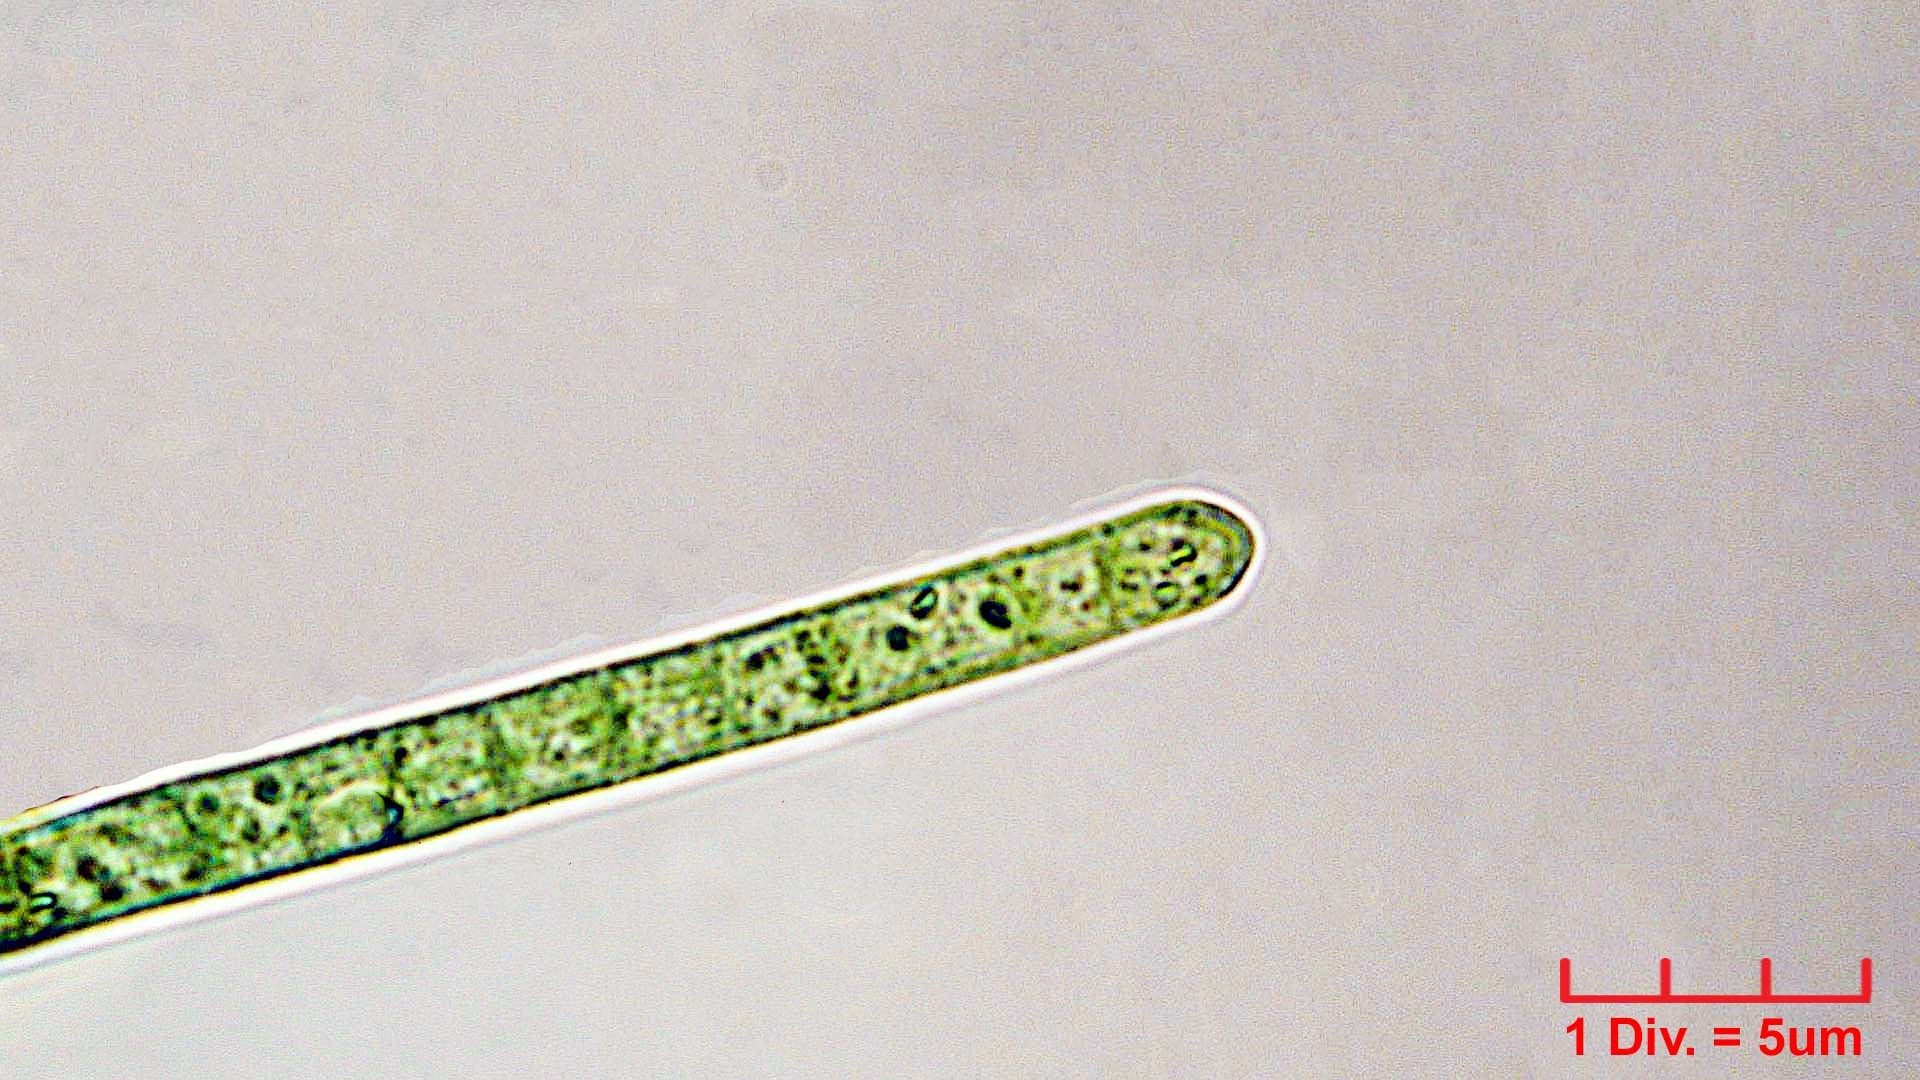 ././Cyanobacteria/Oscillatoriales/Oscillatoriaceae/Phormidium/retzii/phormidium-retzii-234.jpg